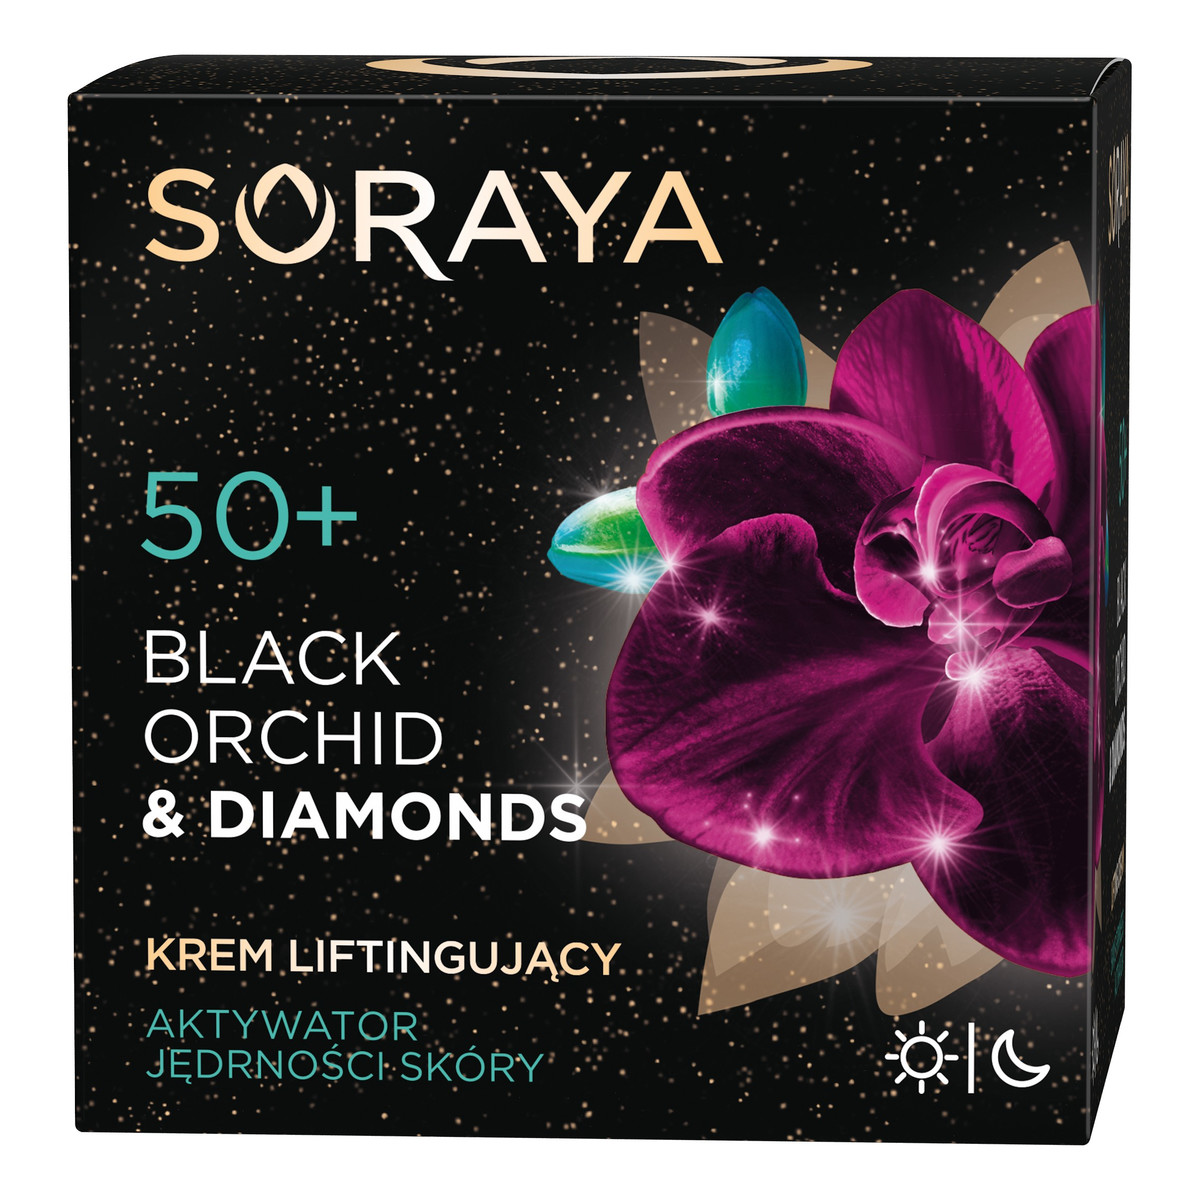 Soraya Black Orchid & Diamonds 50+ Krem liftingujący na dzień i noc 50ml